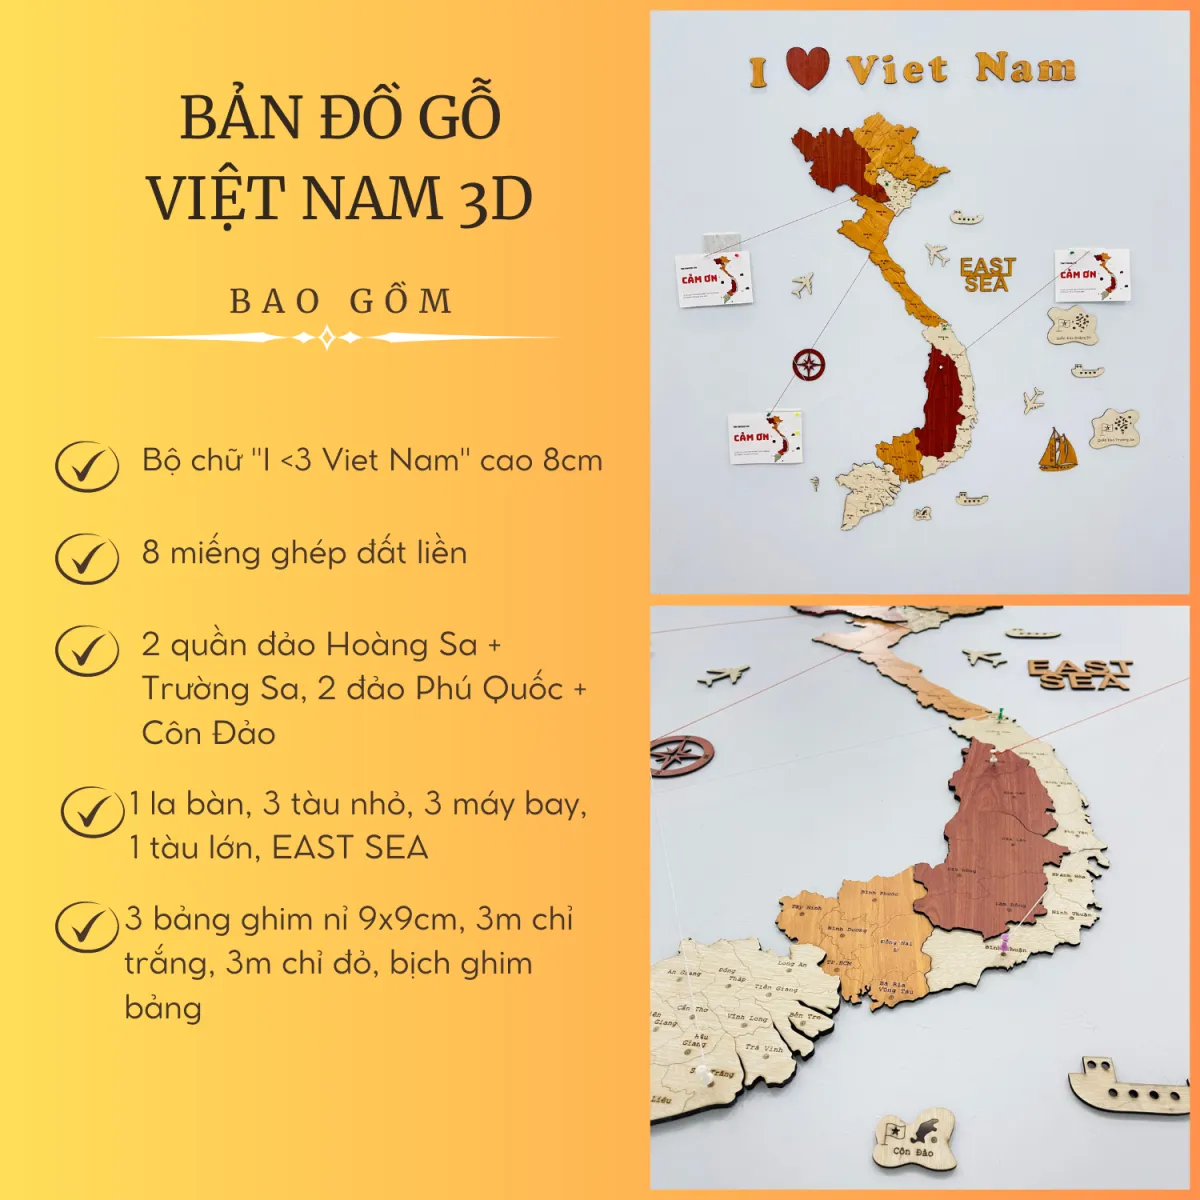 Bài 28 Đặc điểm địa hình Việt Nam Địa lý 8  ÔN THI ĐỊA LÝ  GEOGRAPHY  0847736168